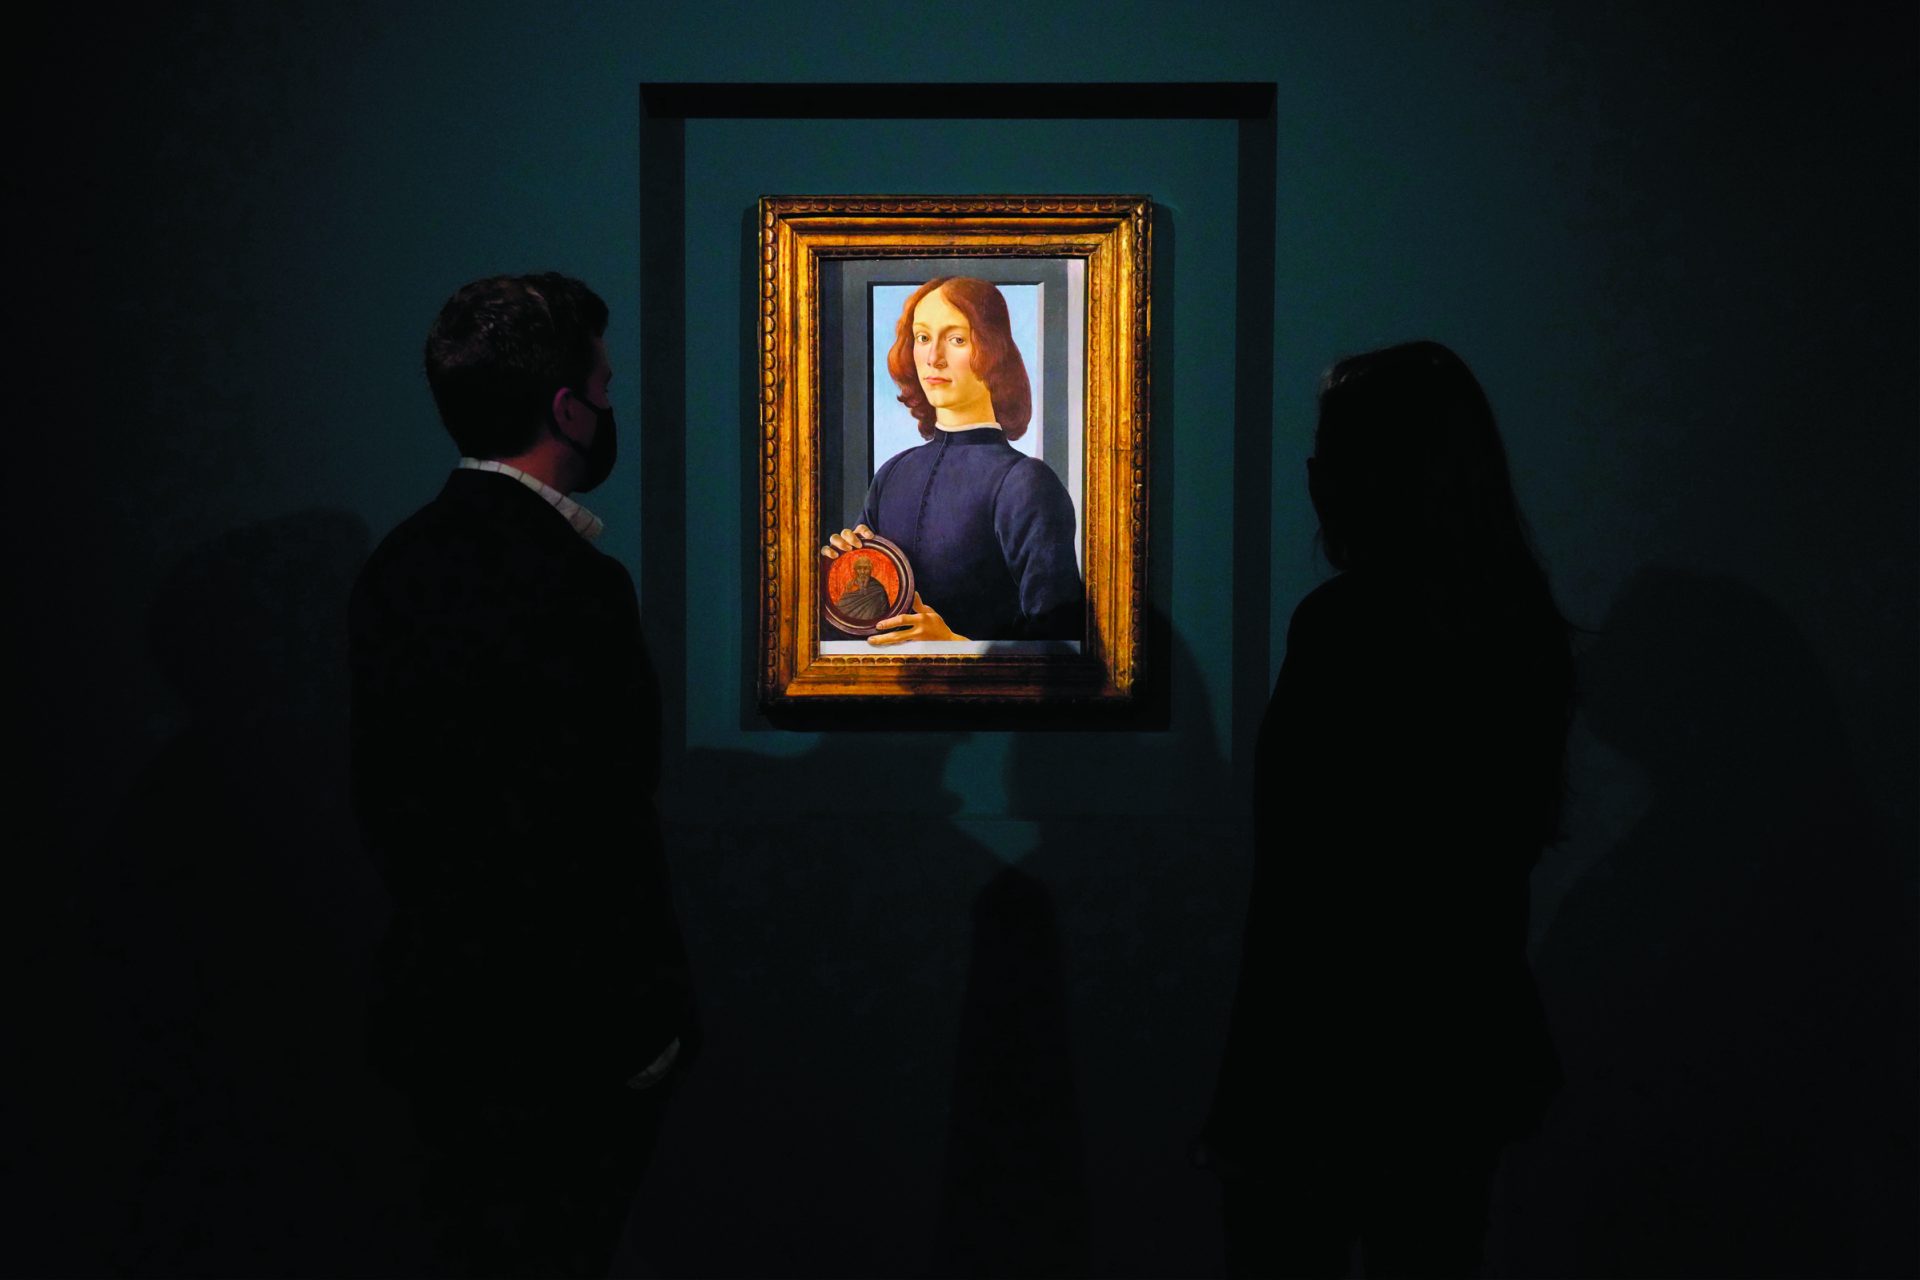 Sotheby’s leiloou um Botticelli por 80 milhões